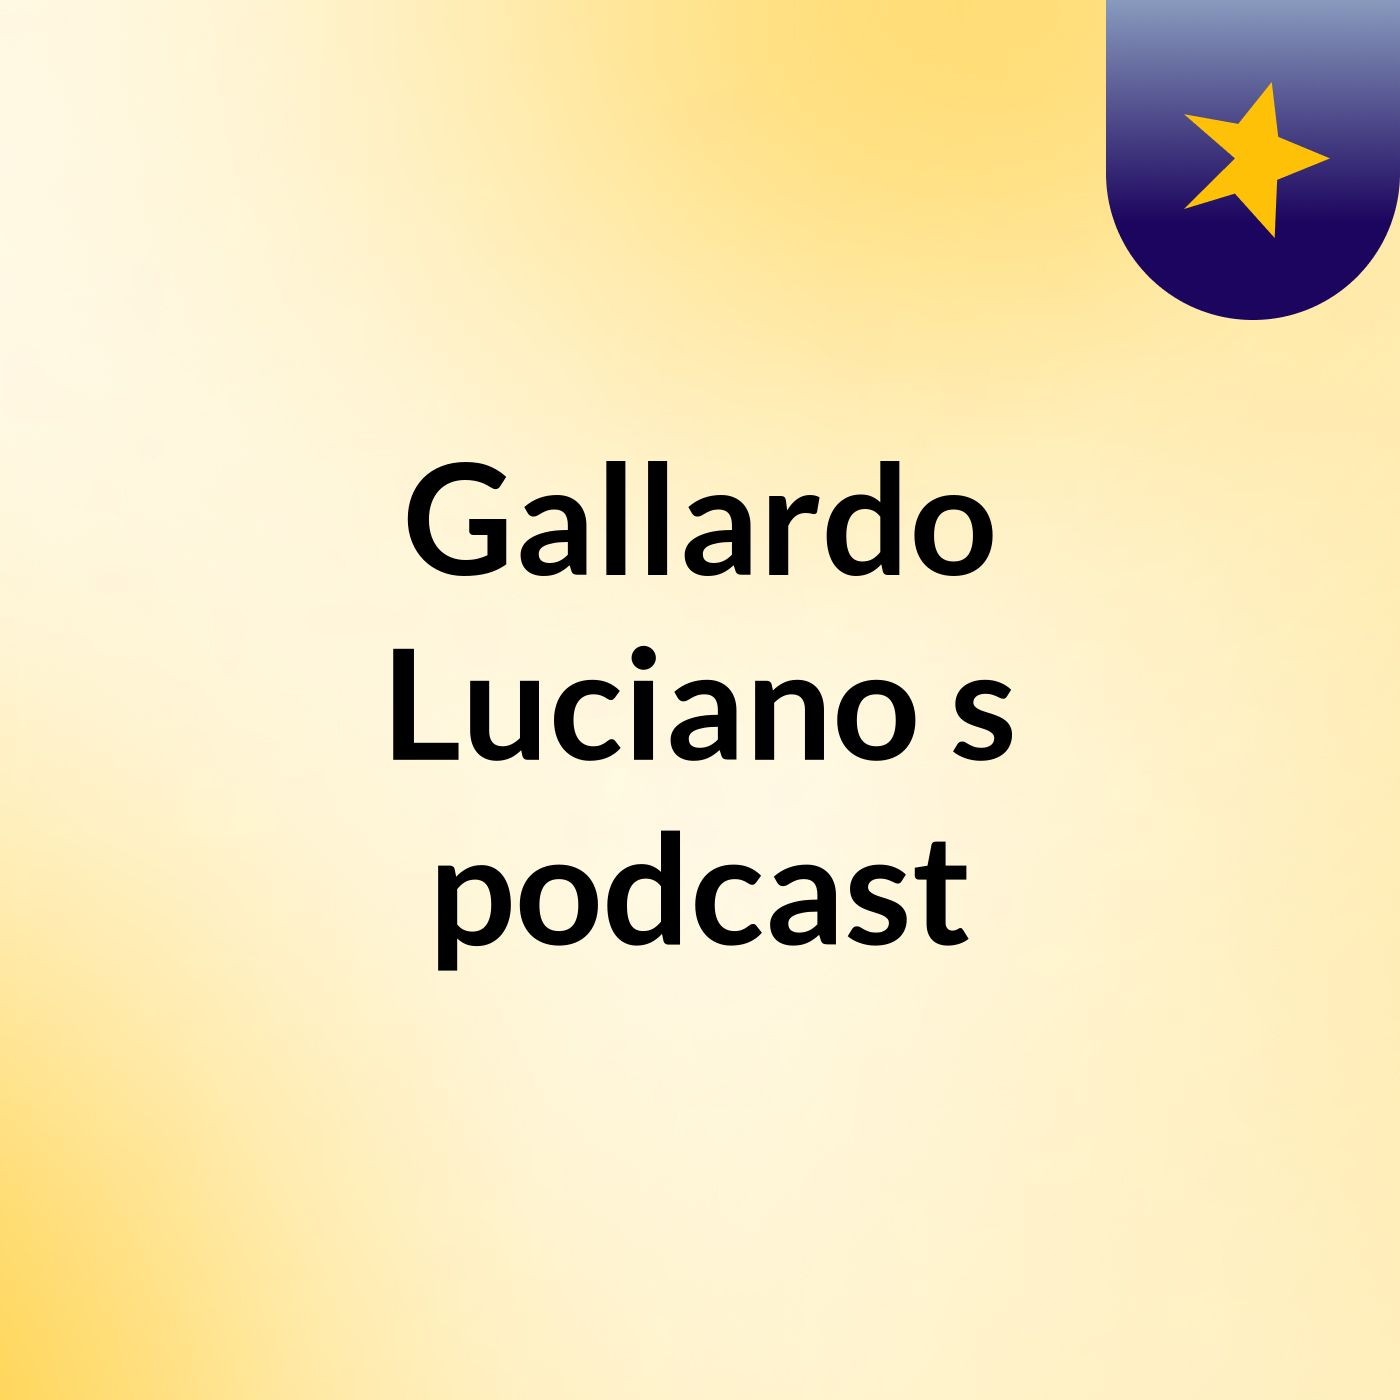 Gallardo Luciano's podcast